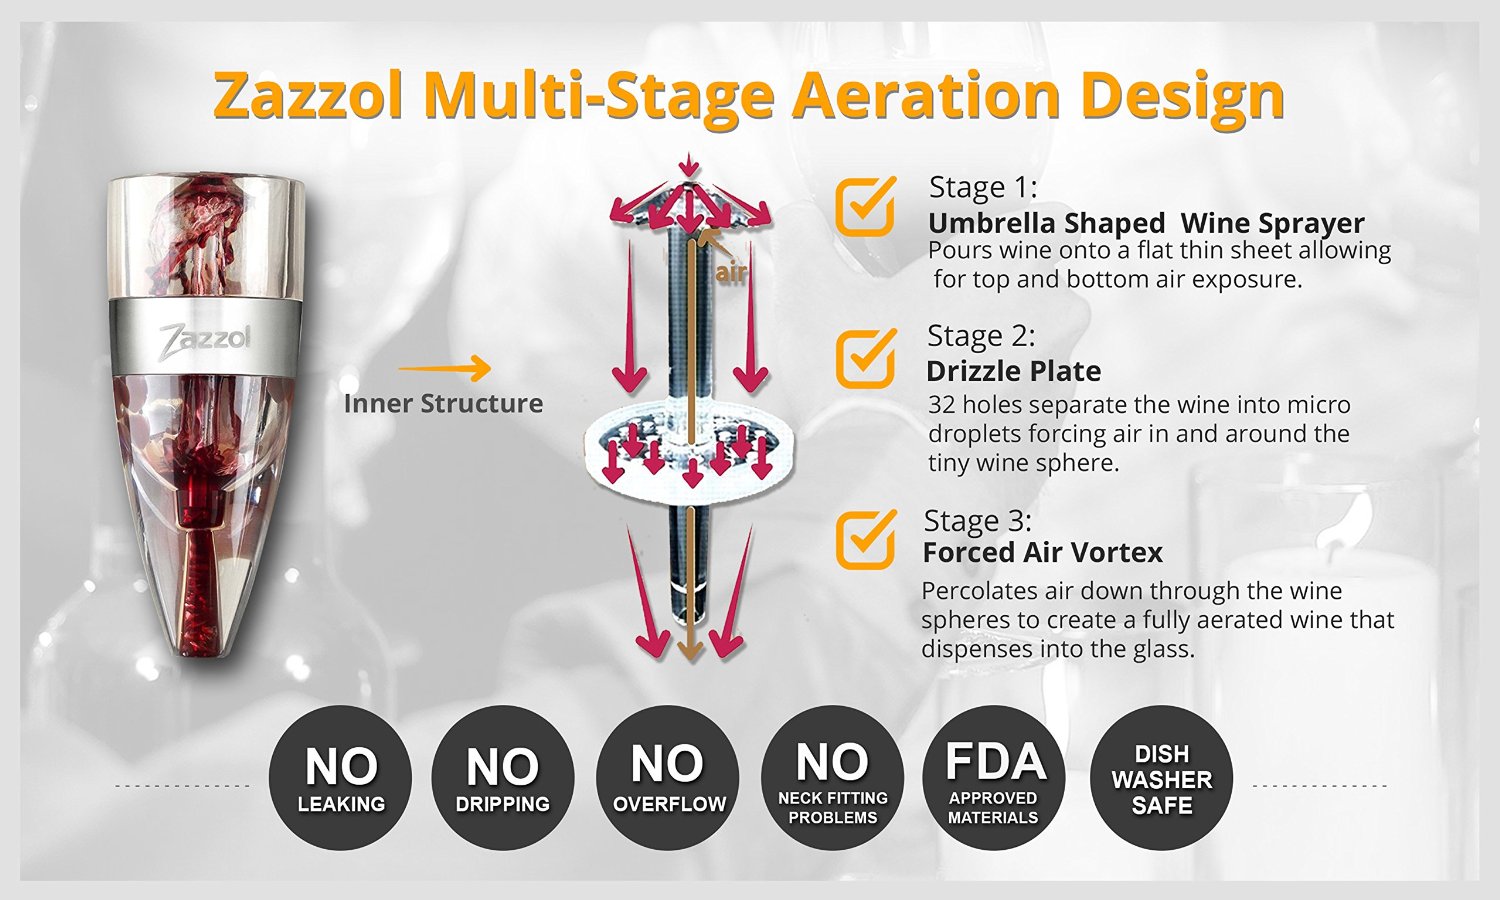 Zazzol Wine Aerator Decanter Multi-stage aeration design